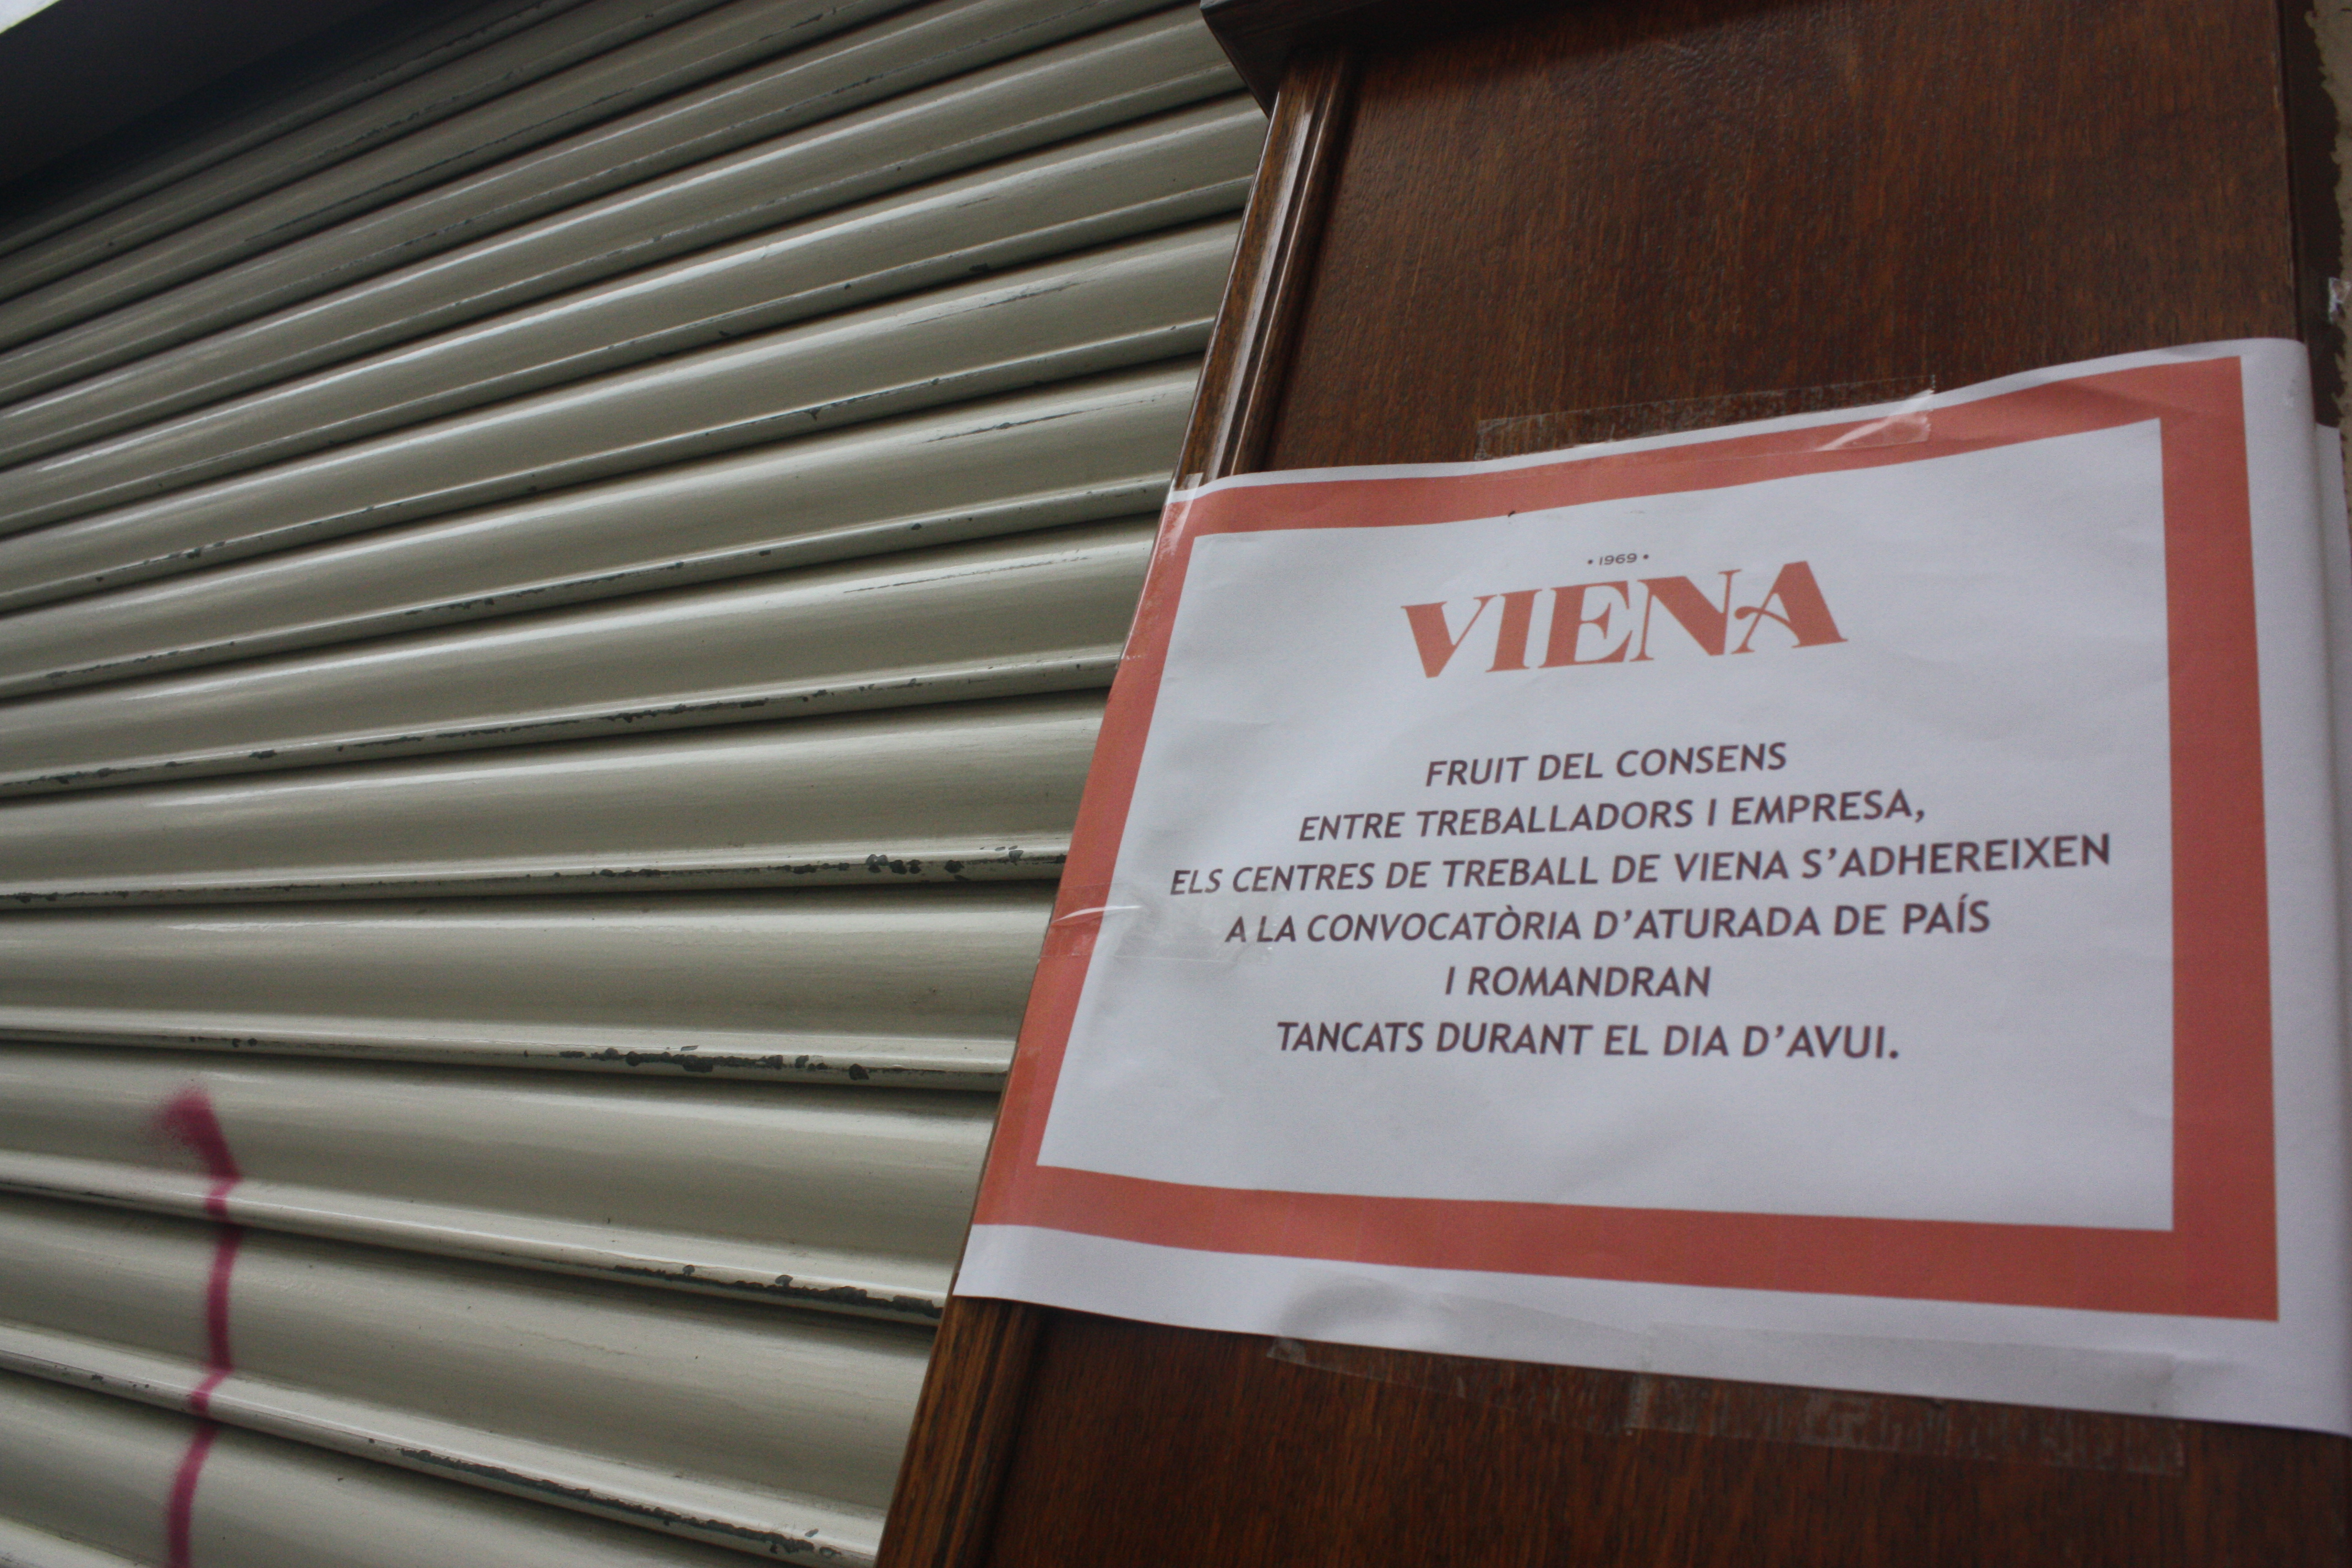 Viena és un dels comerços de restauració que ha tancat